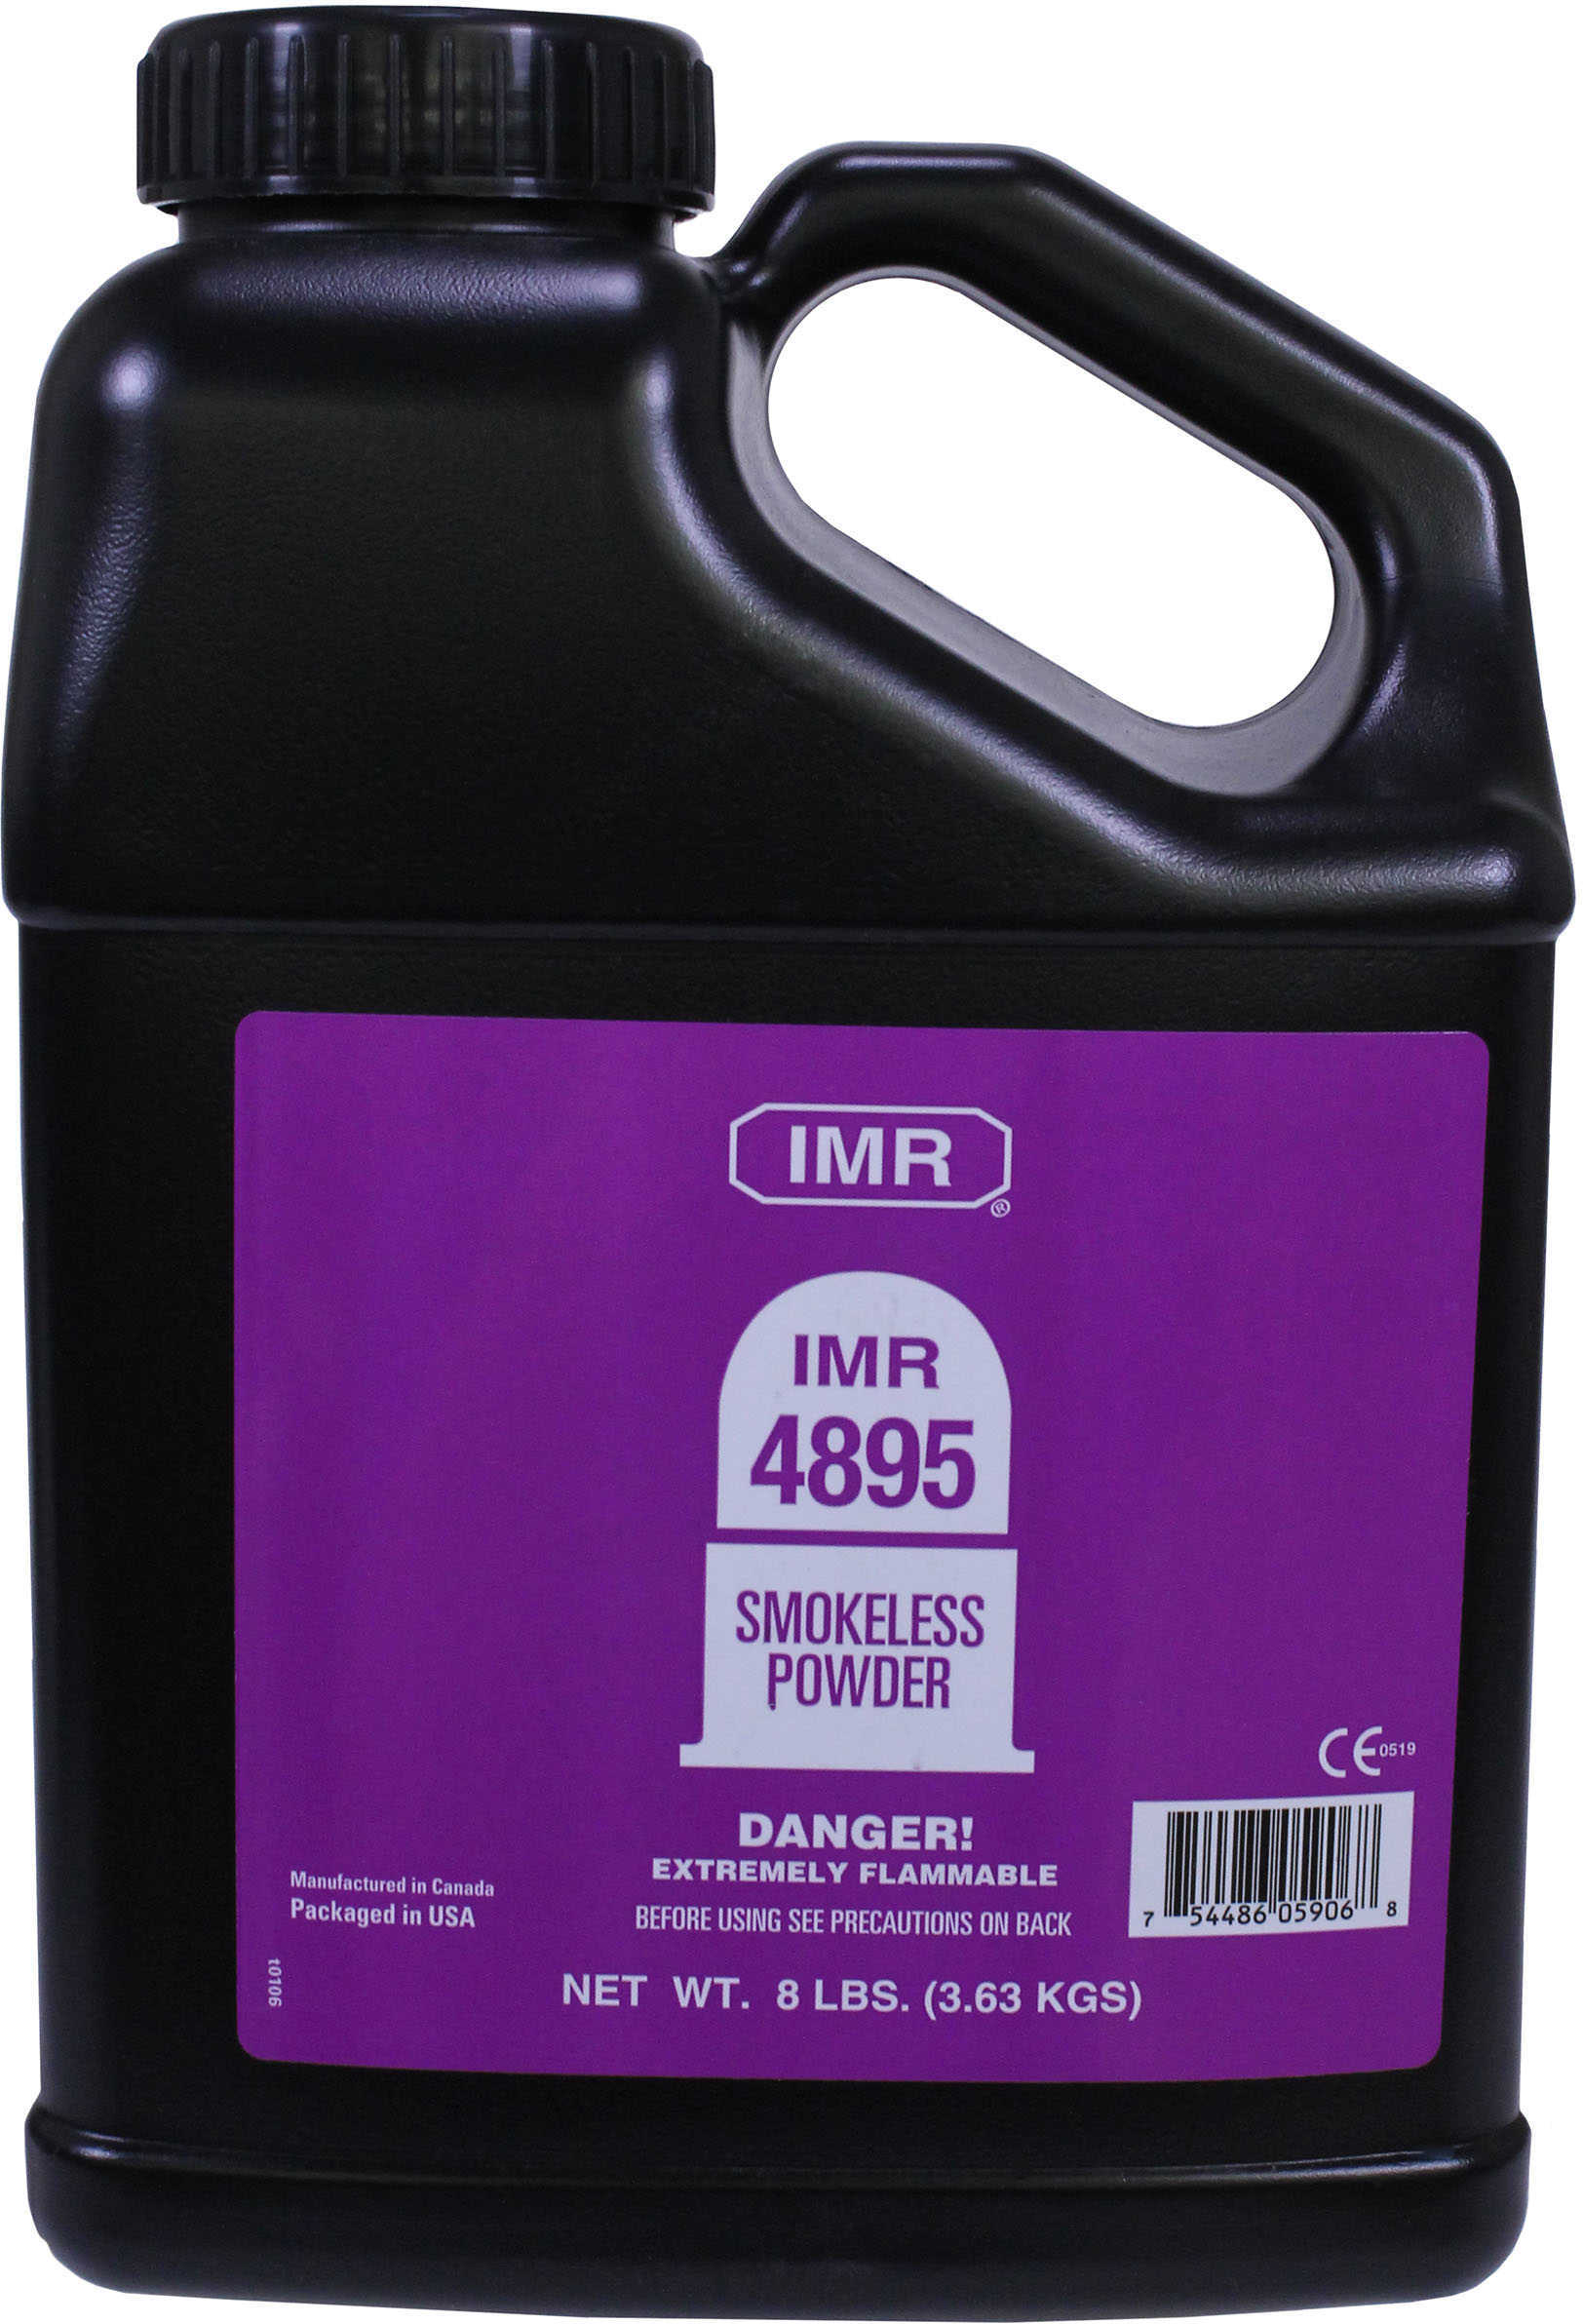 IMR 4895 Smokeless Powder 8 Lbs